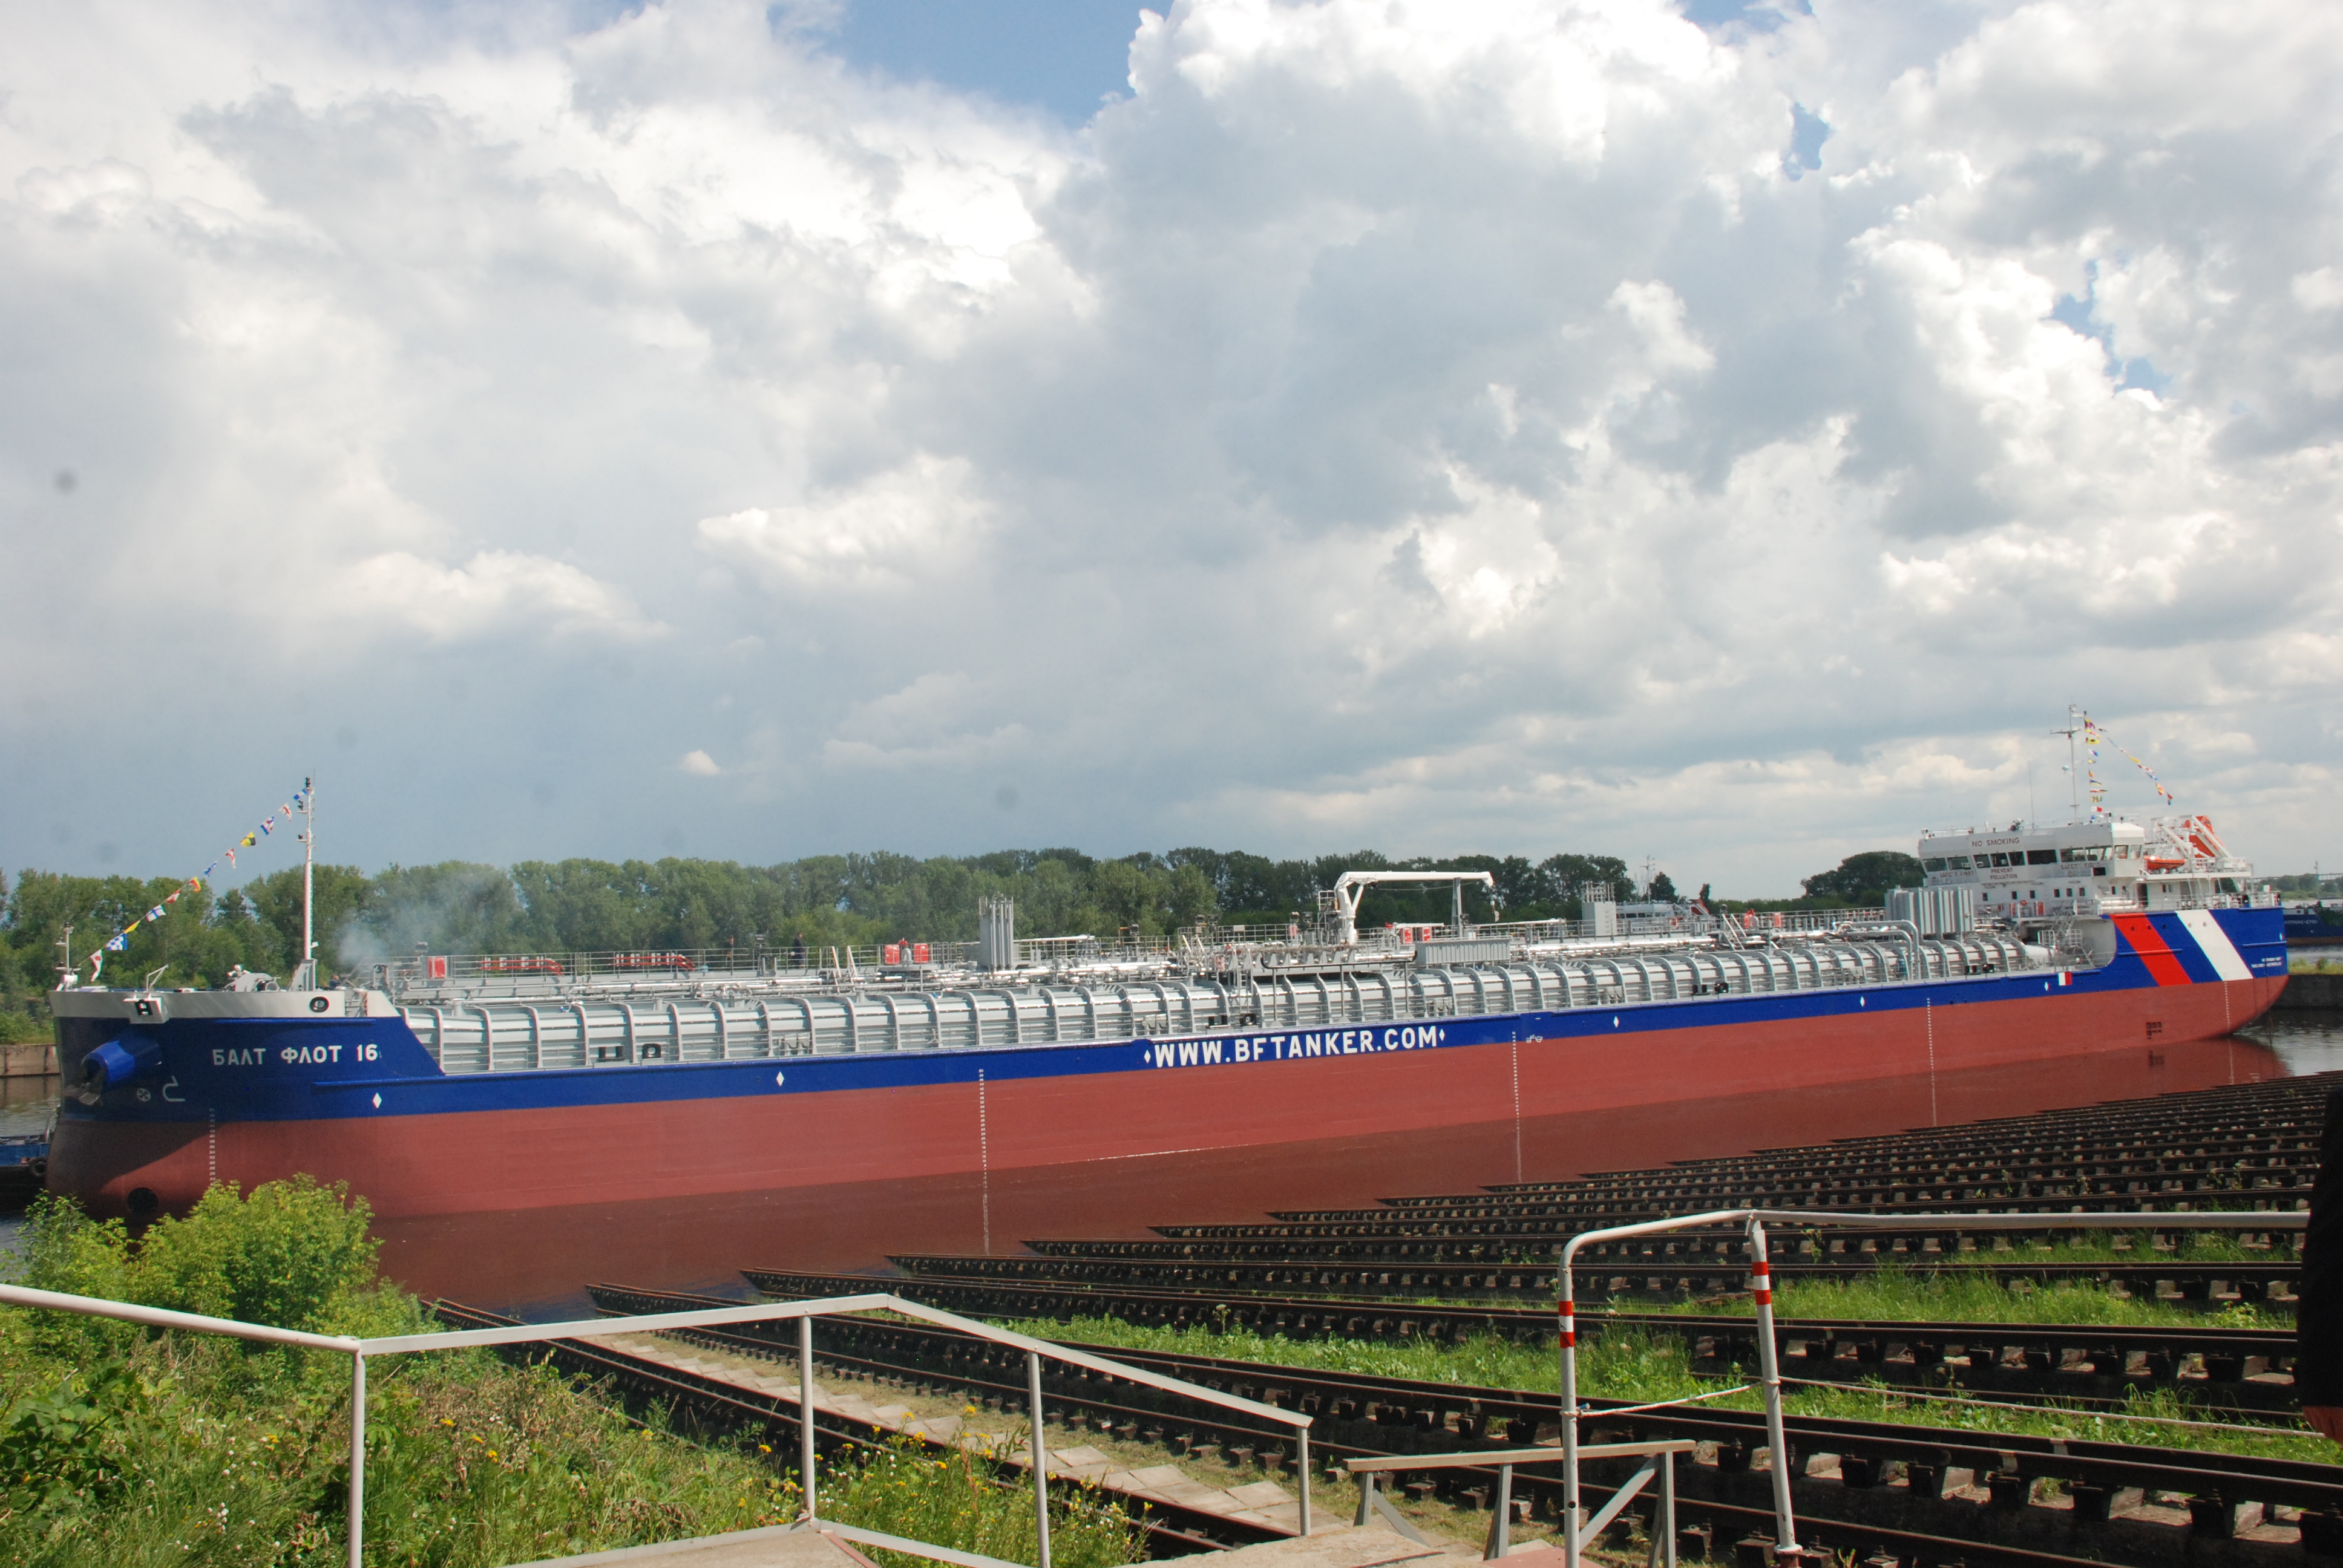 Уникальный танкер-химовоз спущен на воду в Нижнем Новгороде (ФОТО) - фото 1